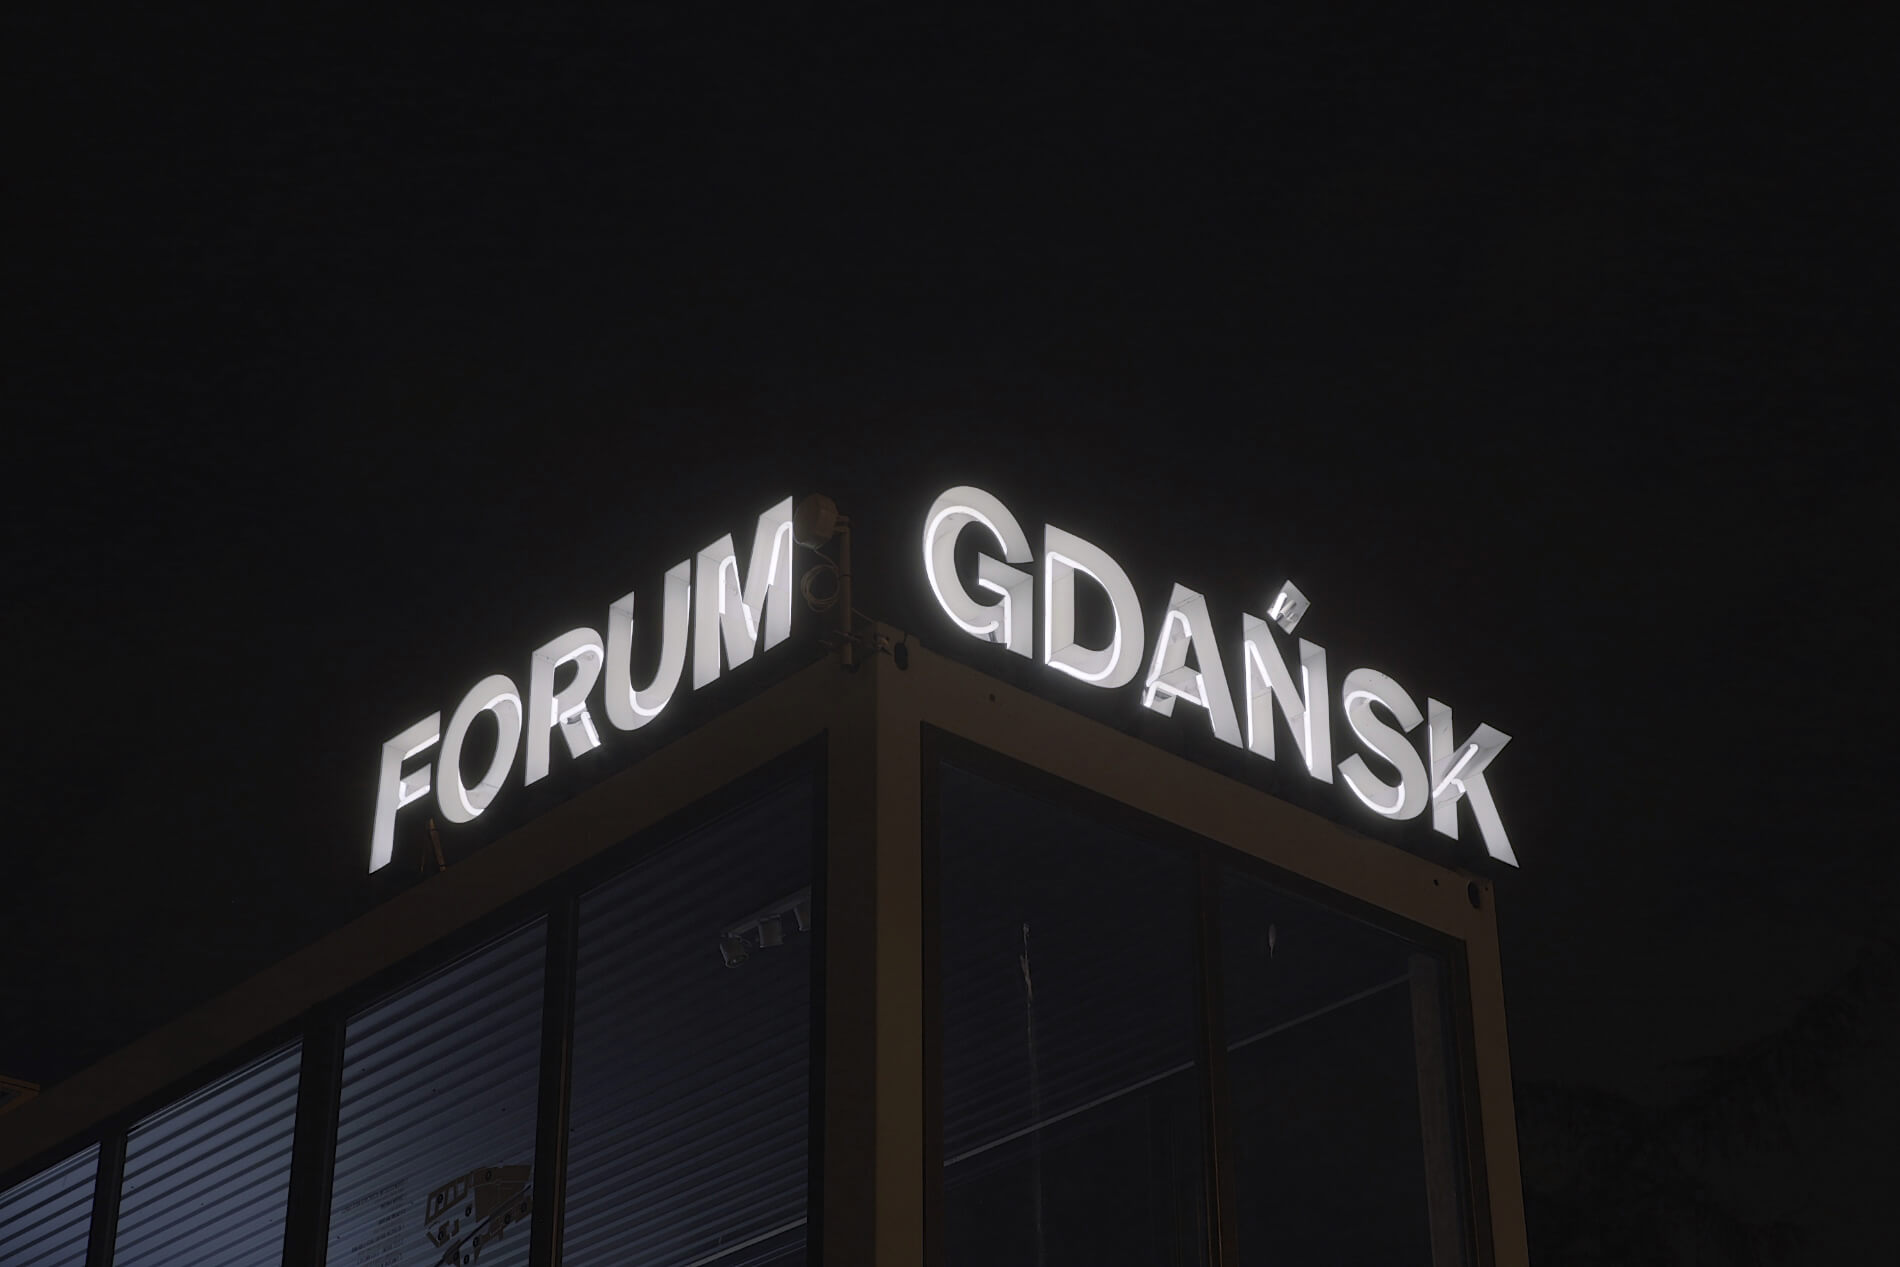 Forum Gdańsk informacja - Forum Gdańsk - litery świetlne z neonem, zamontowane na stelażu, umieszczone na dachu budynku